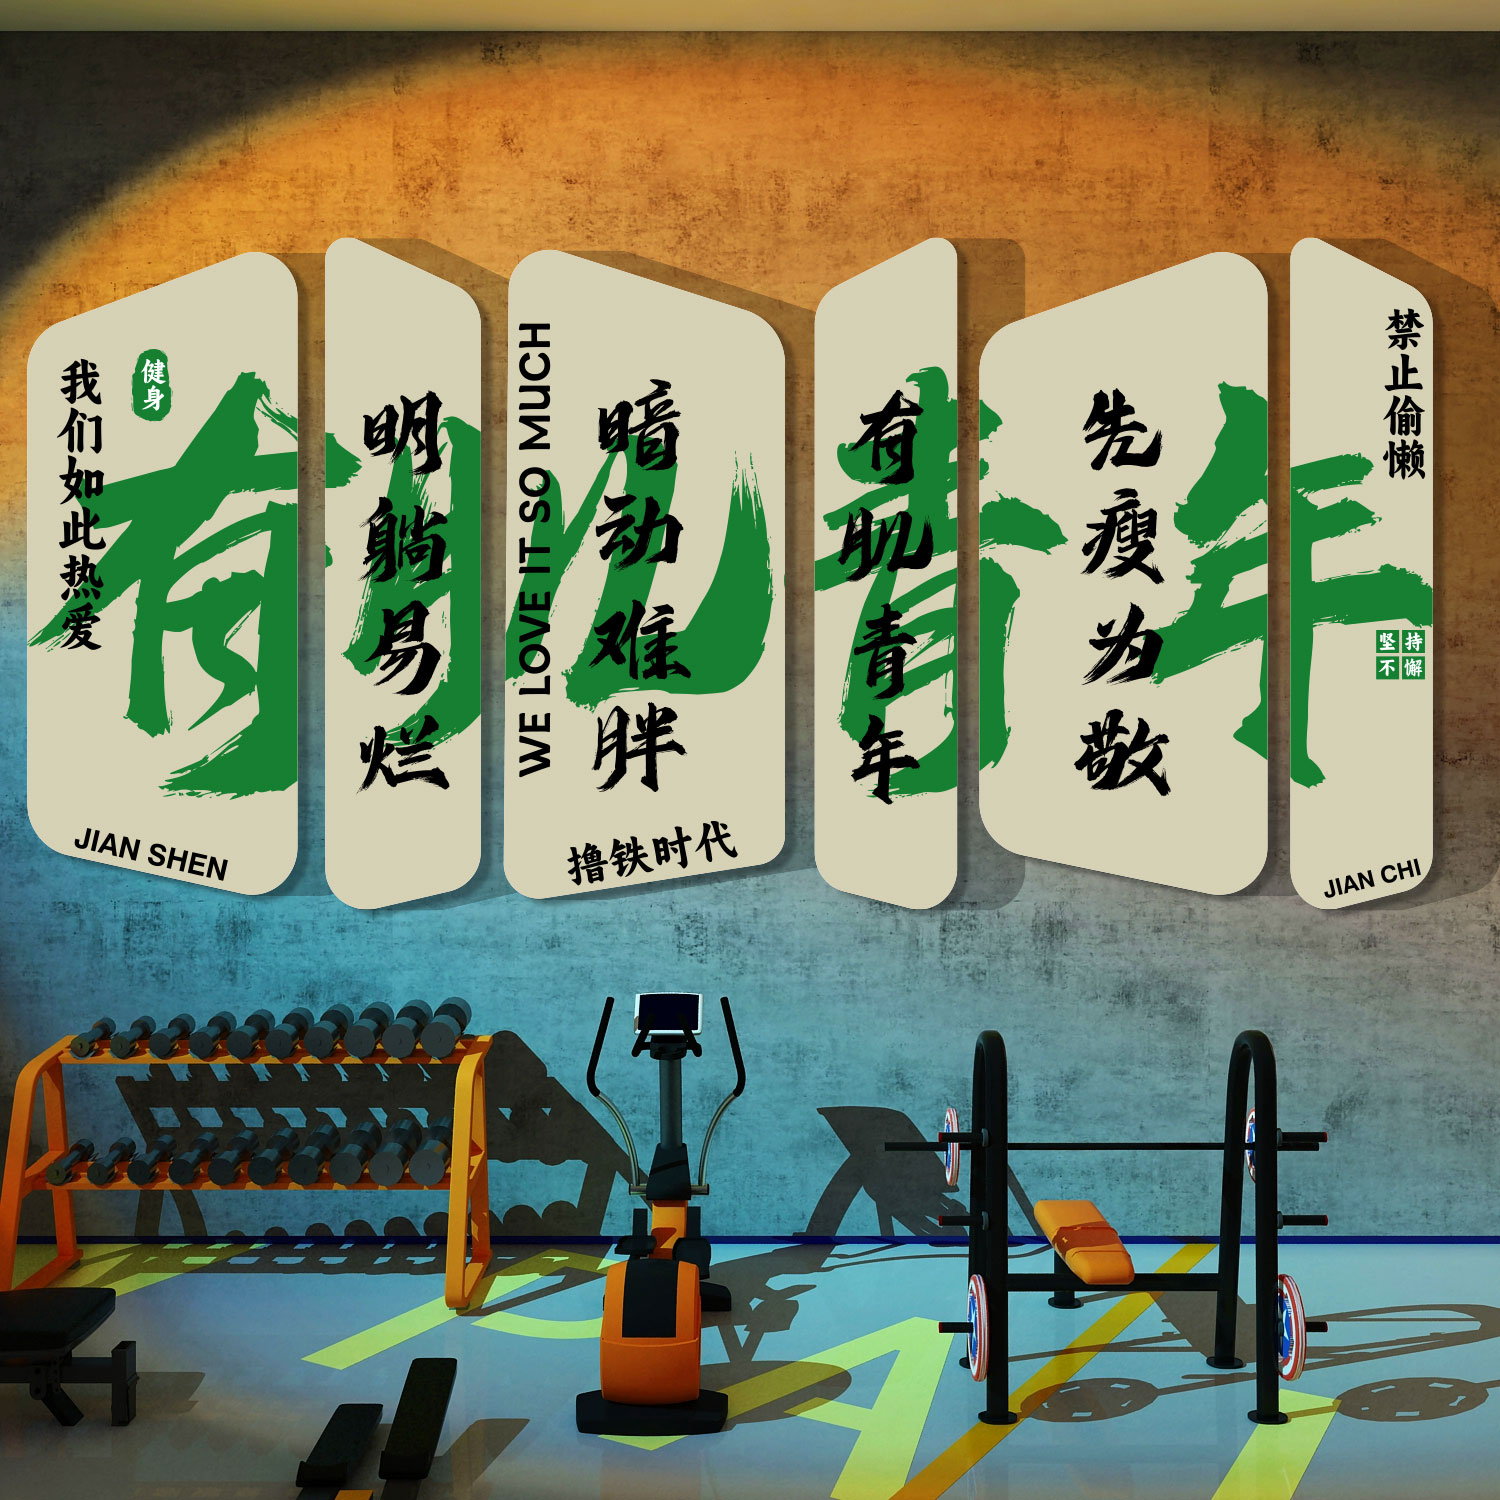 健身房墙面装饰壁纸贴画运动文化馆背景布置励志标语网红创意摆件